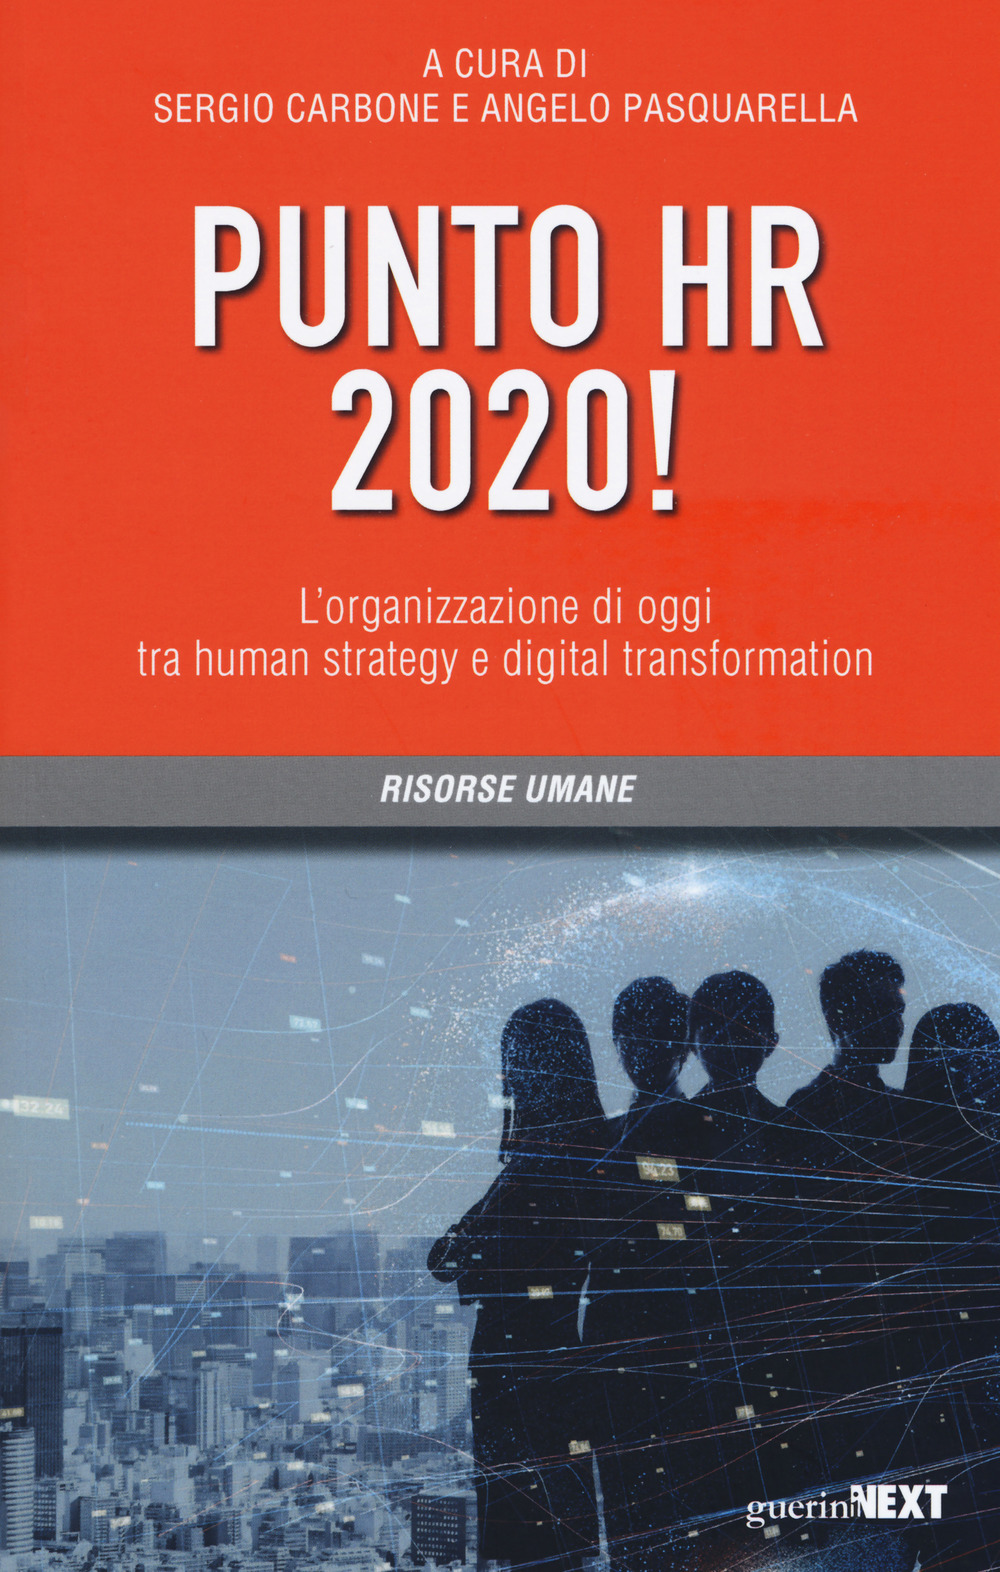 Punto HR 2020! L'organizzazione di oggi tra human strategy e digital transformation